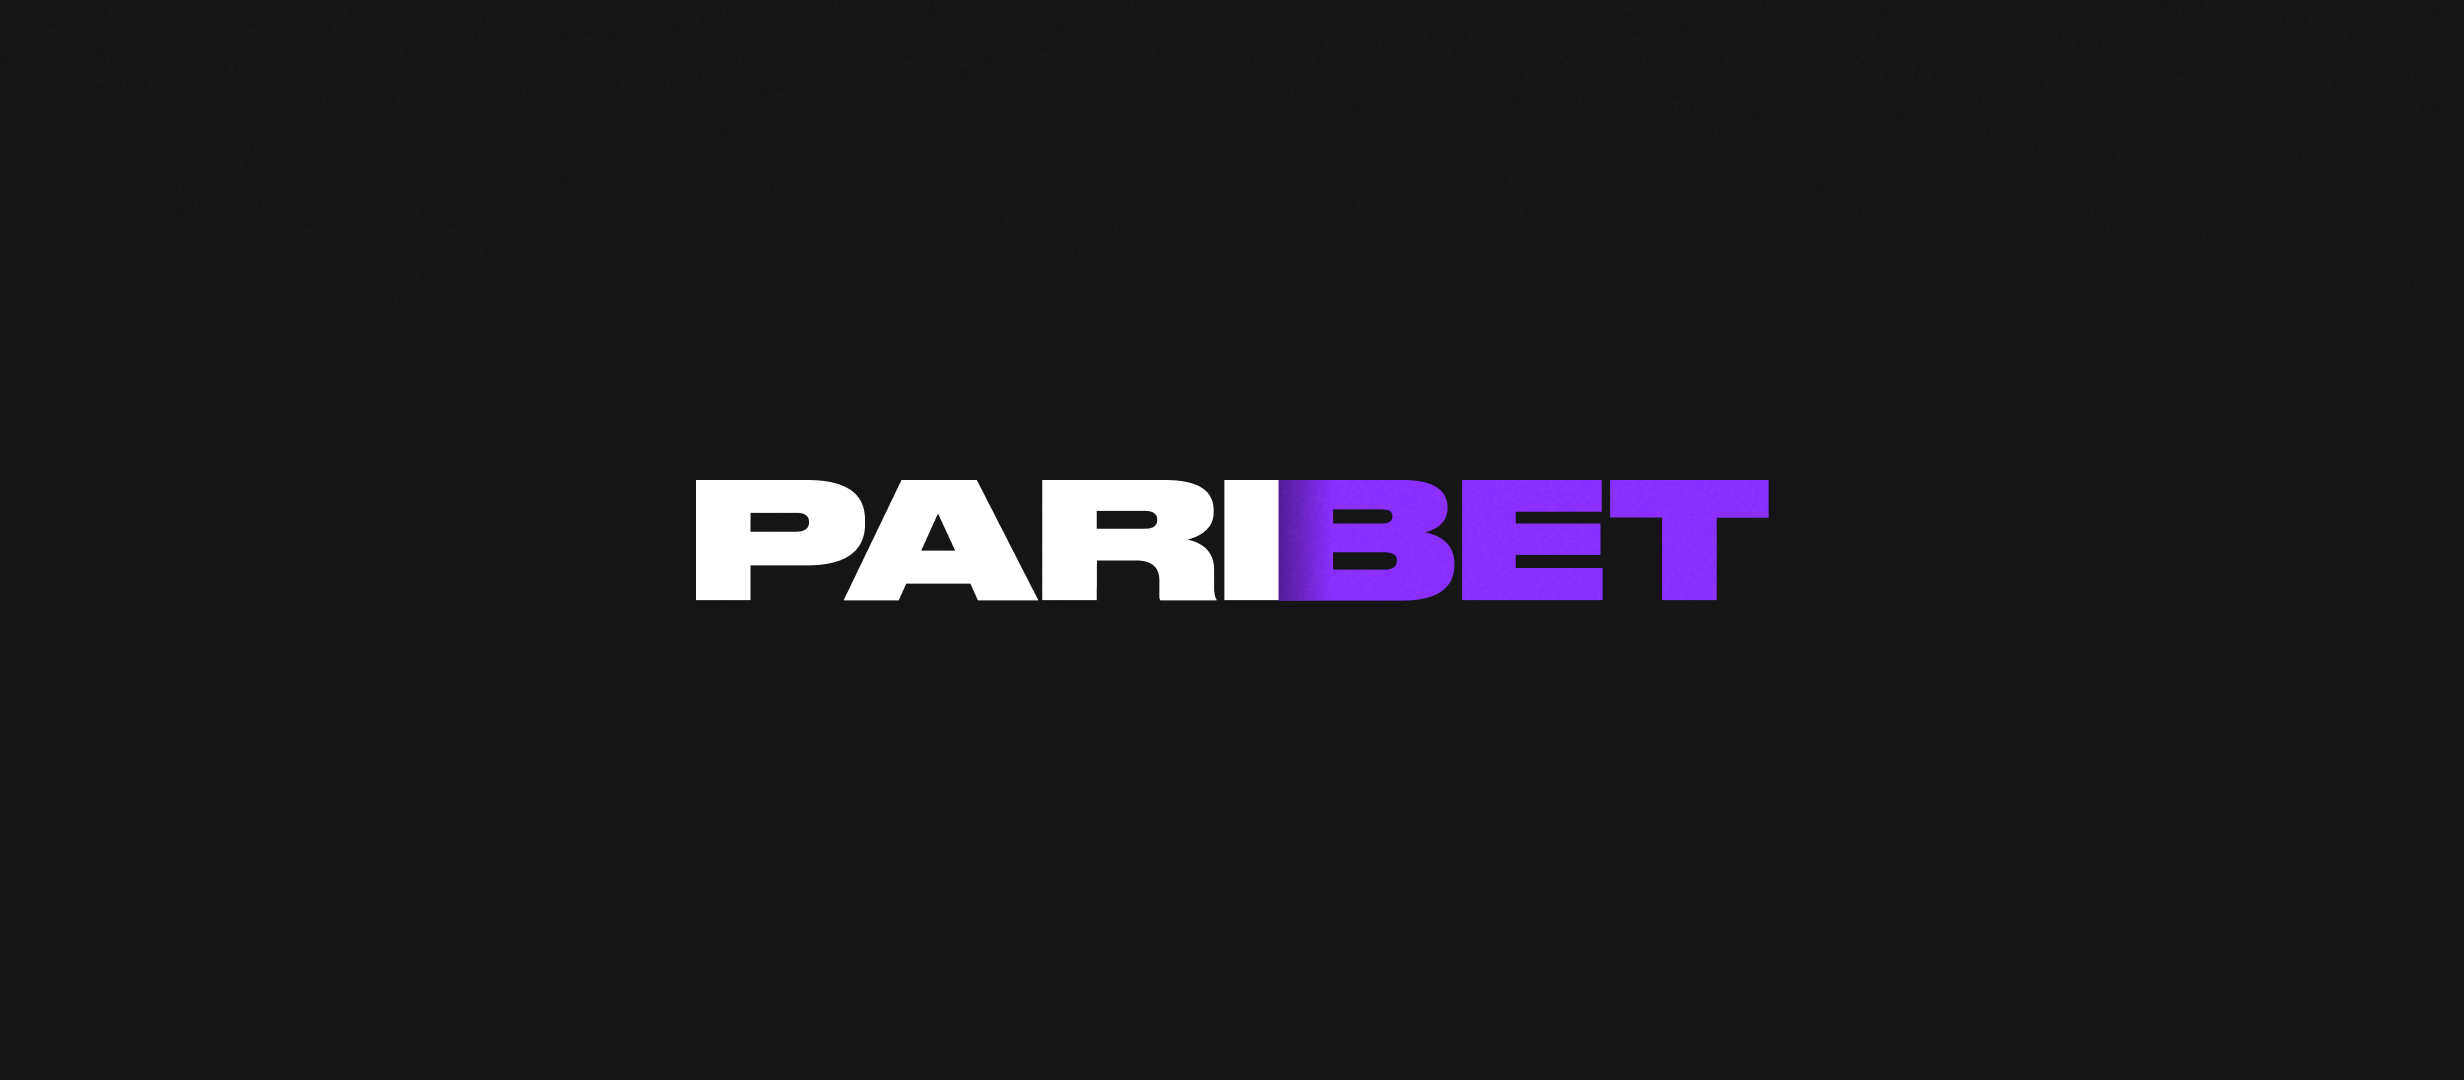 Paribet обещает начать переезд на новый сайт в течение суток